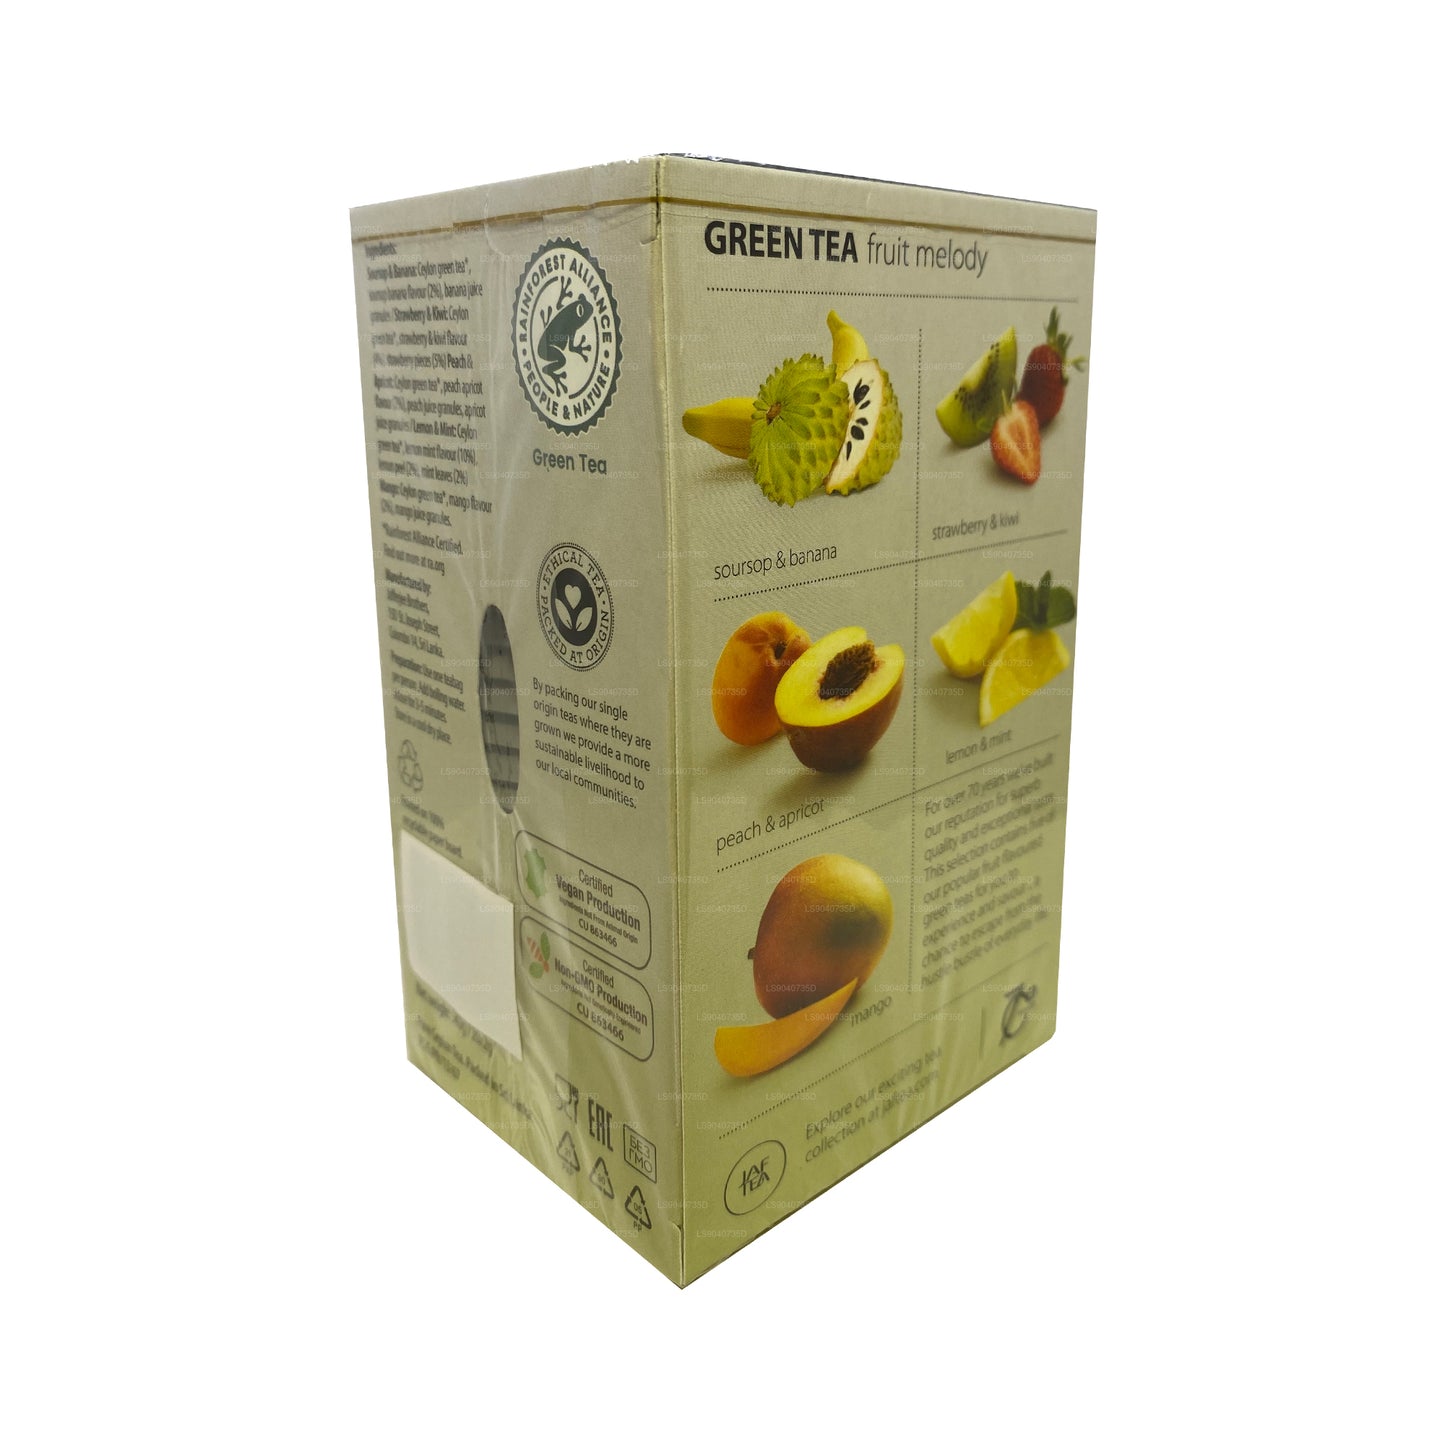 Jaf Tea ピュアグリーンコレクショングリーンティーフルーツメロディ (40g) 20ティーバッグ